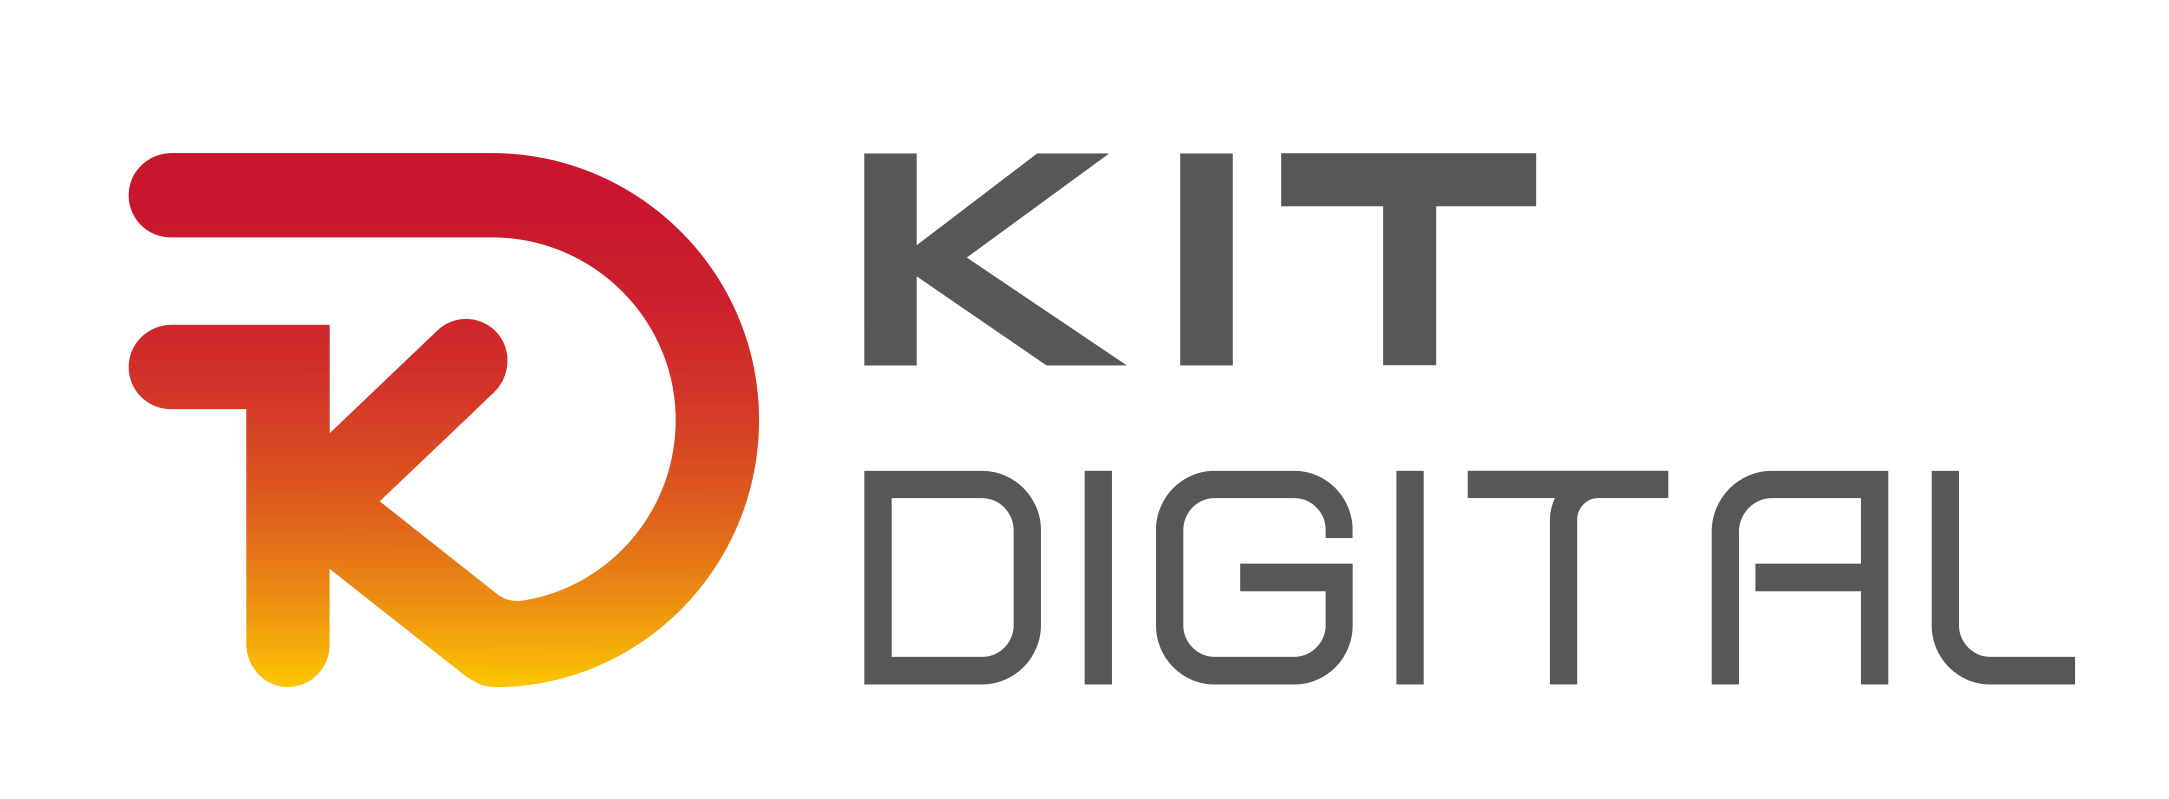 Kit digital logo